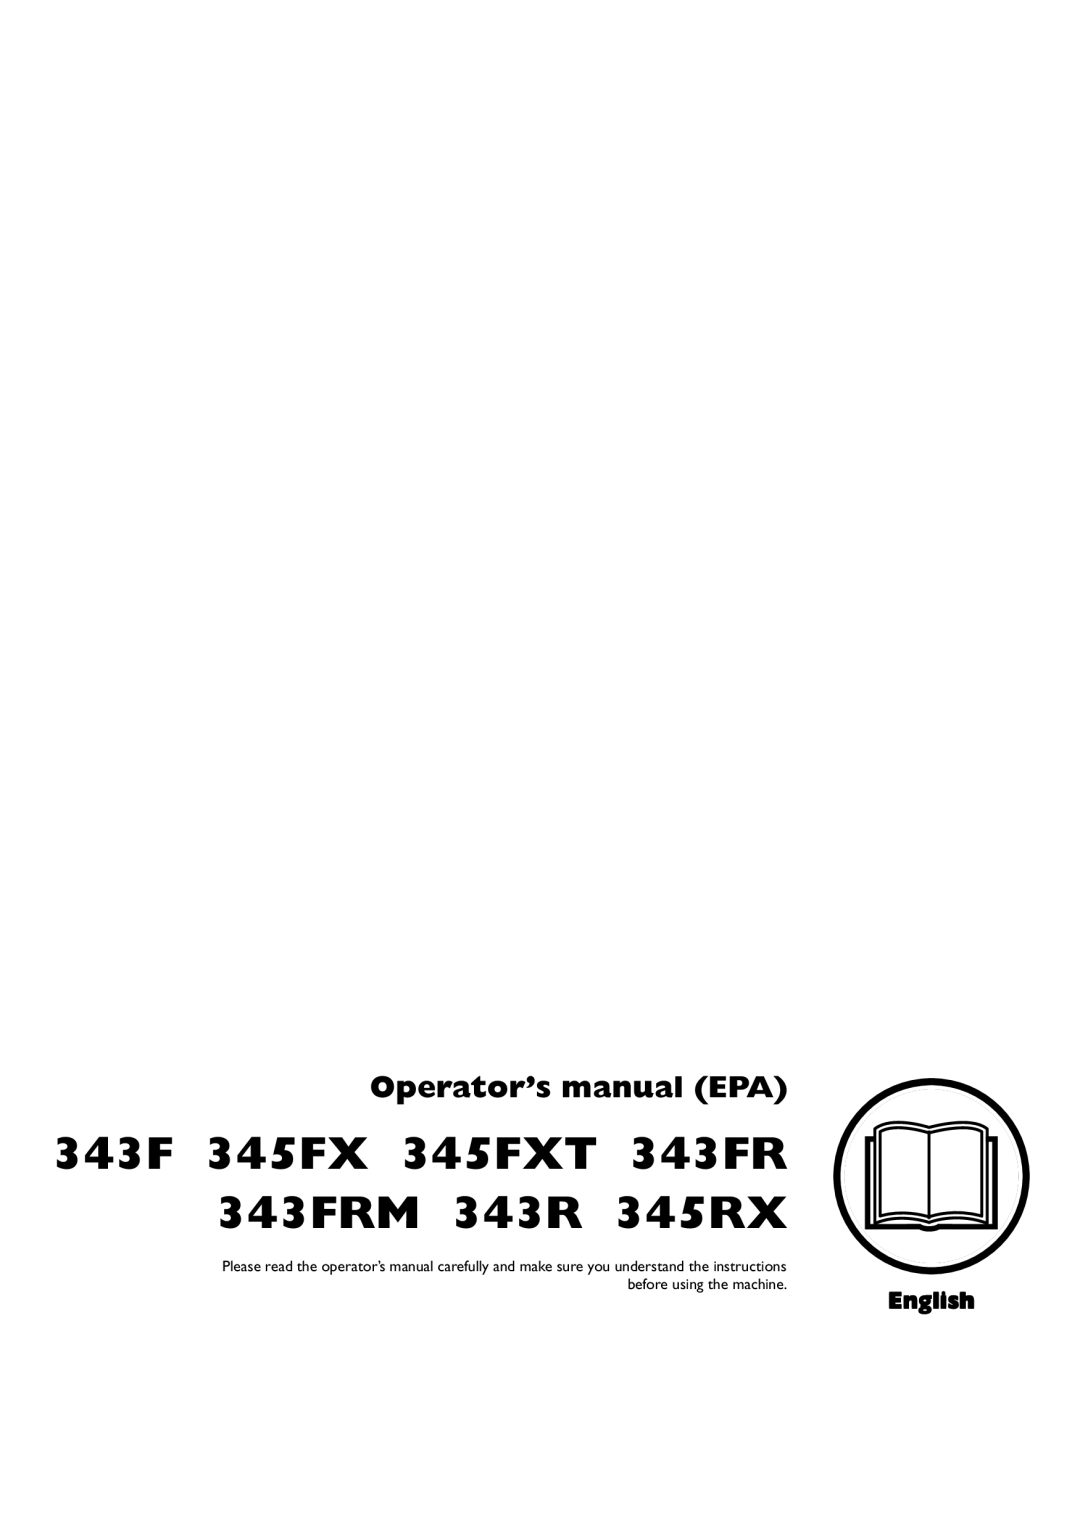 Husqvarna 335LX manual 343F 345FX 345FXT 343FR 343FRM 343R 345RX, Operator’s manual EPA, English 